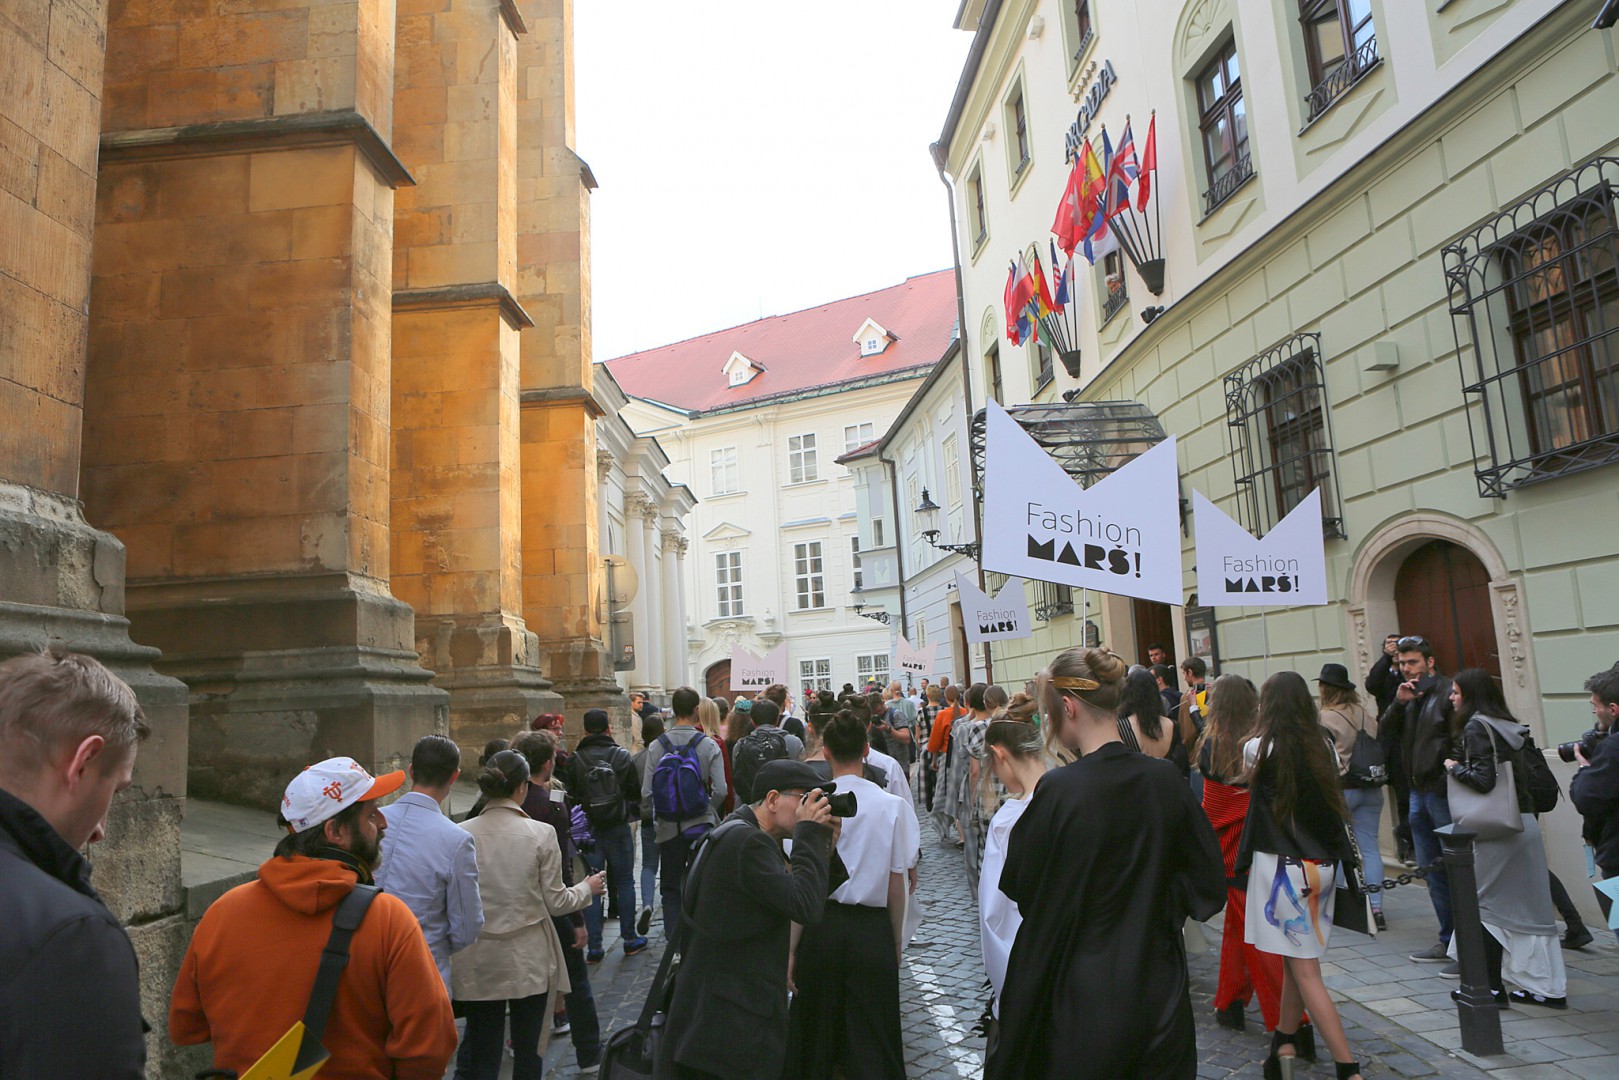 Fashion Marš! rozžiaril ulice Bratislavy počas najdlhšej módnej prehliadky